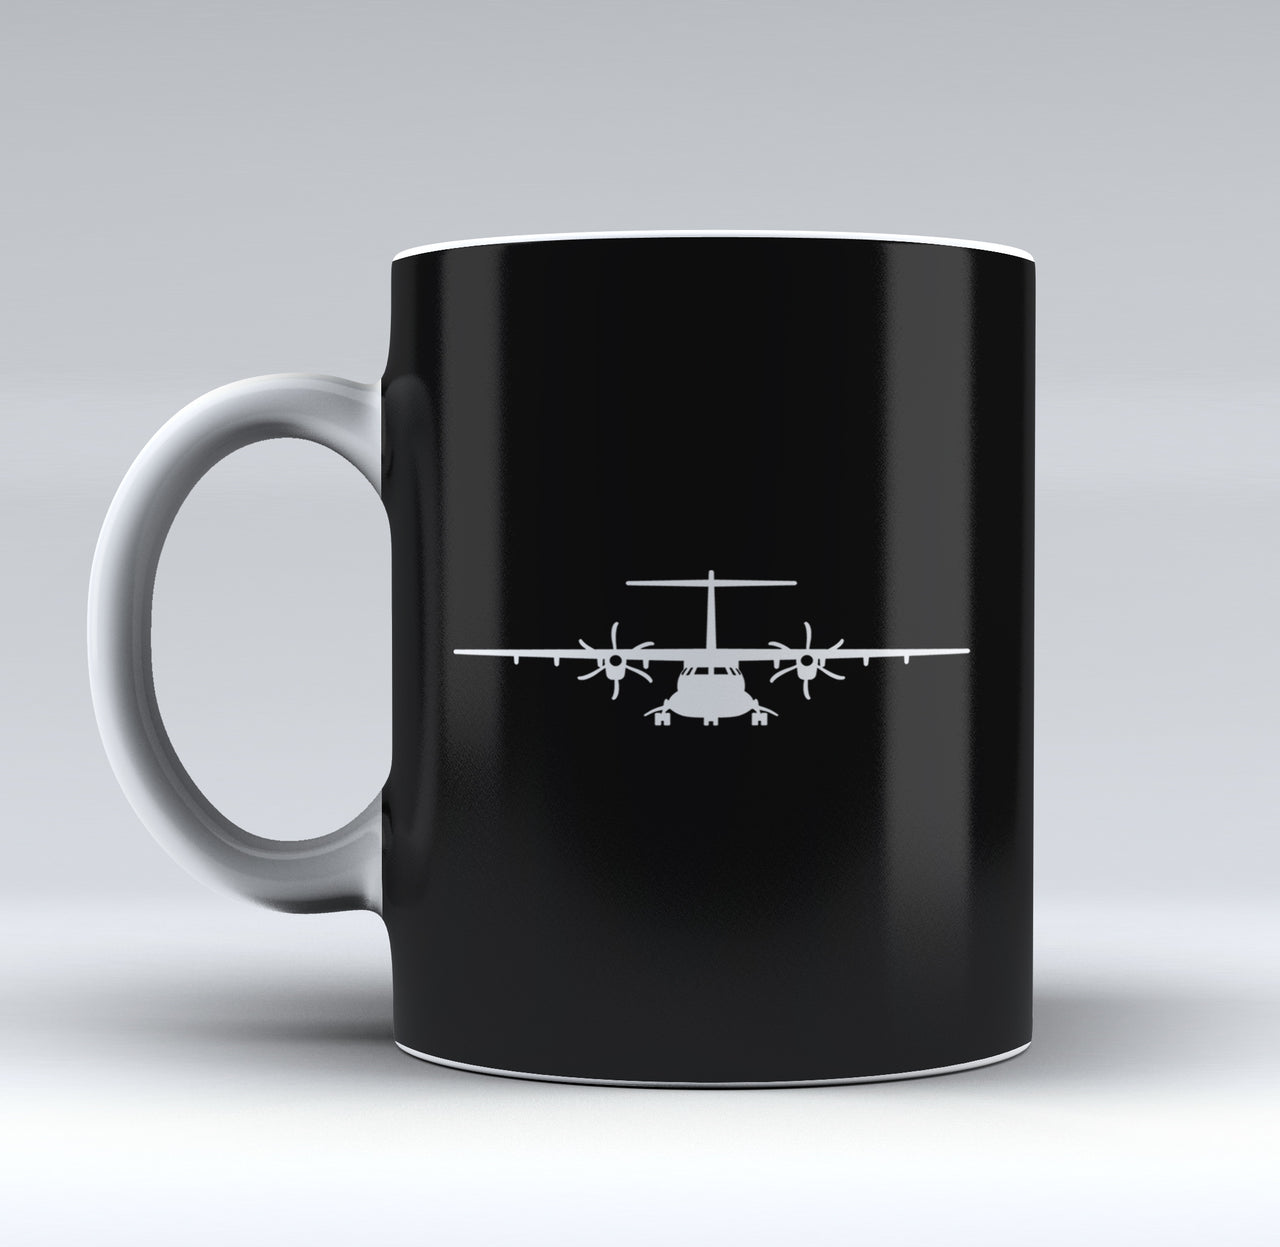 ATR-72 Silhouette Designed Mugs